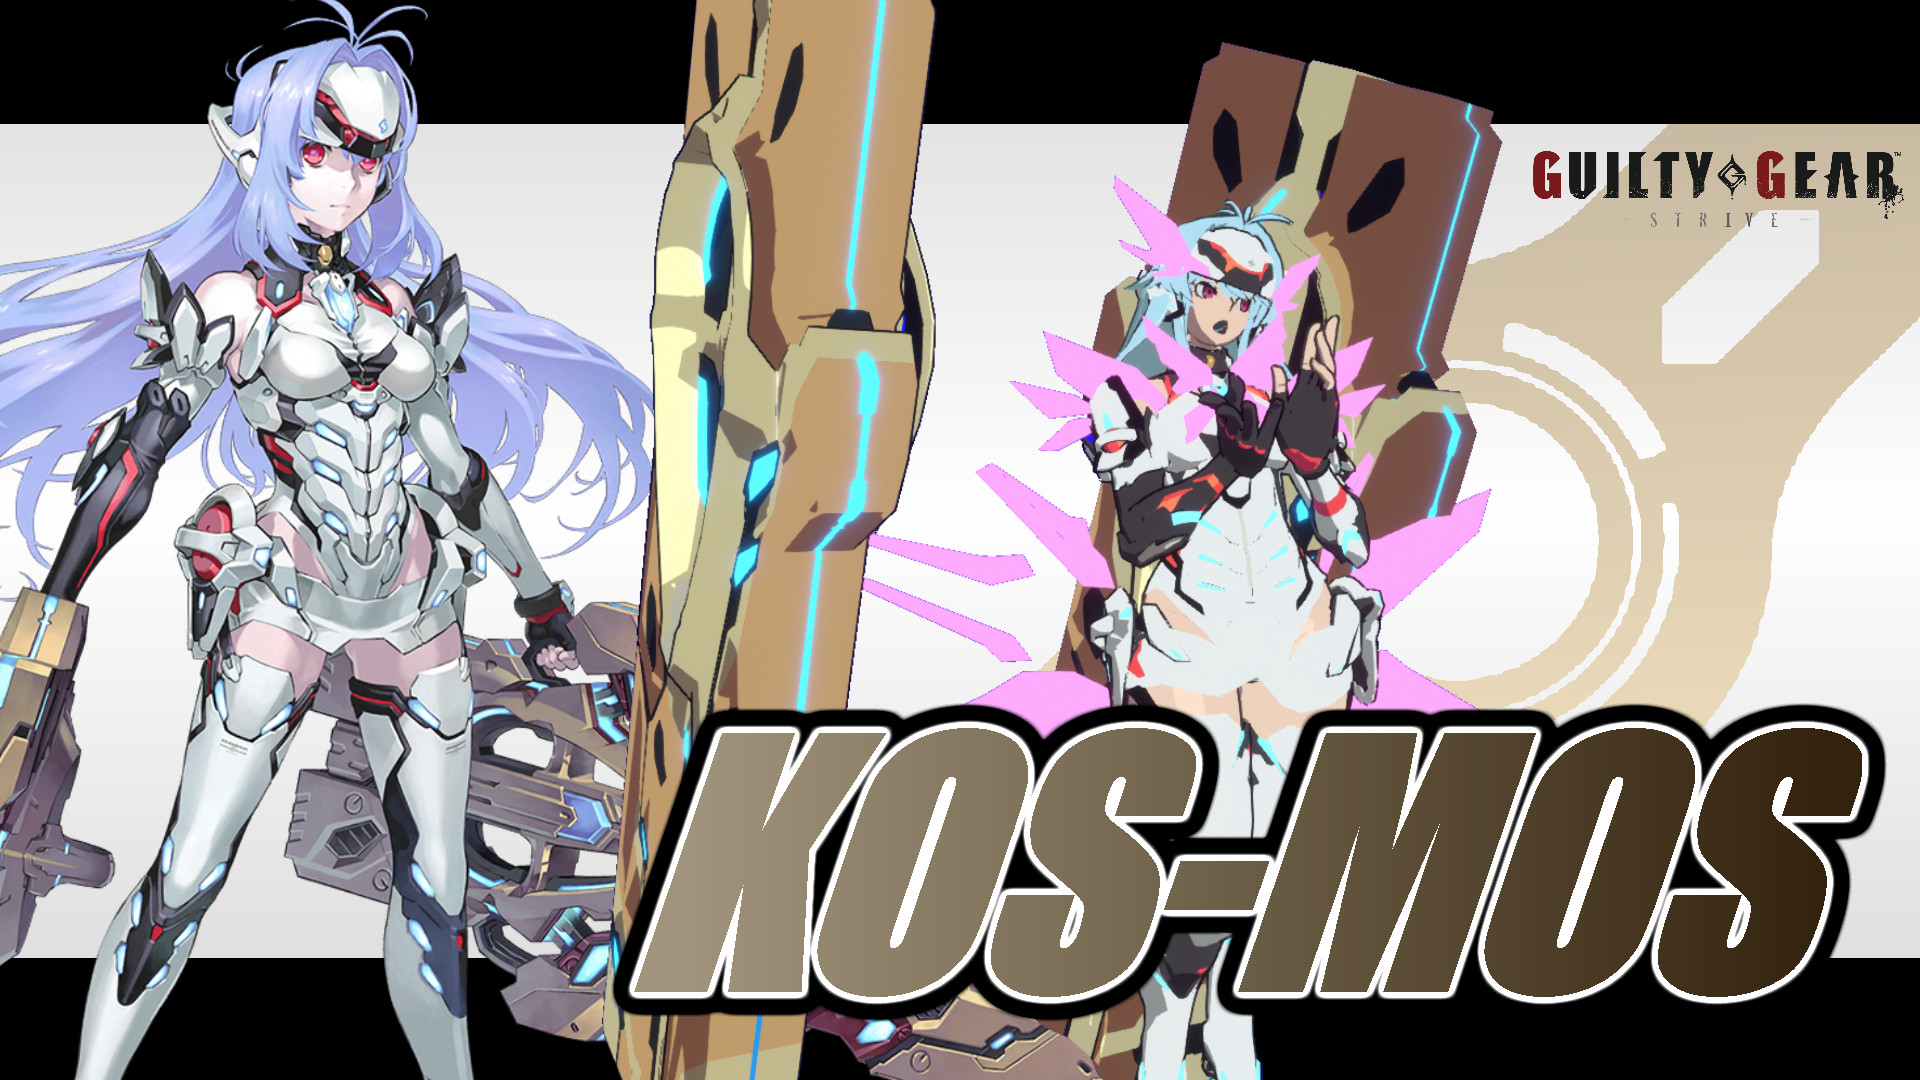 Kos-Mos : r/Xenoblade_Chronicles